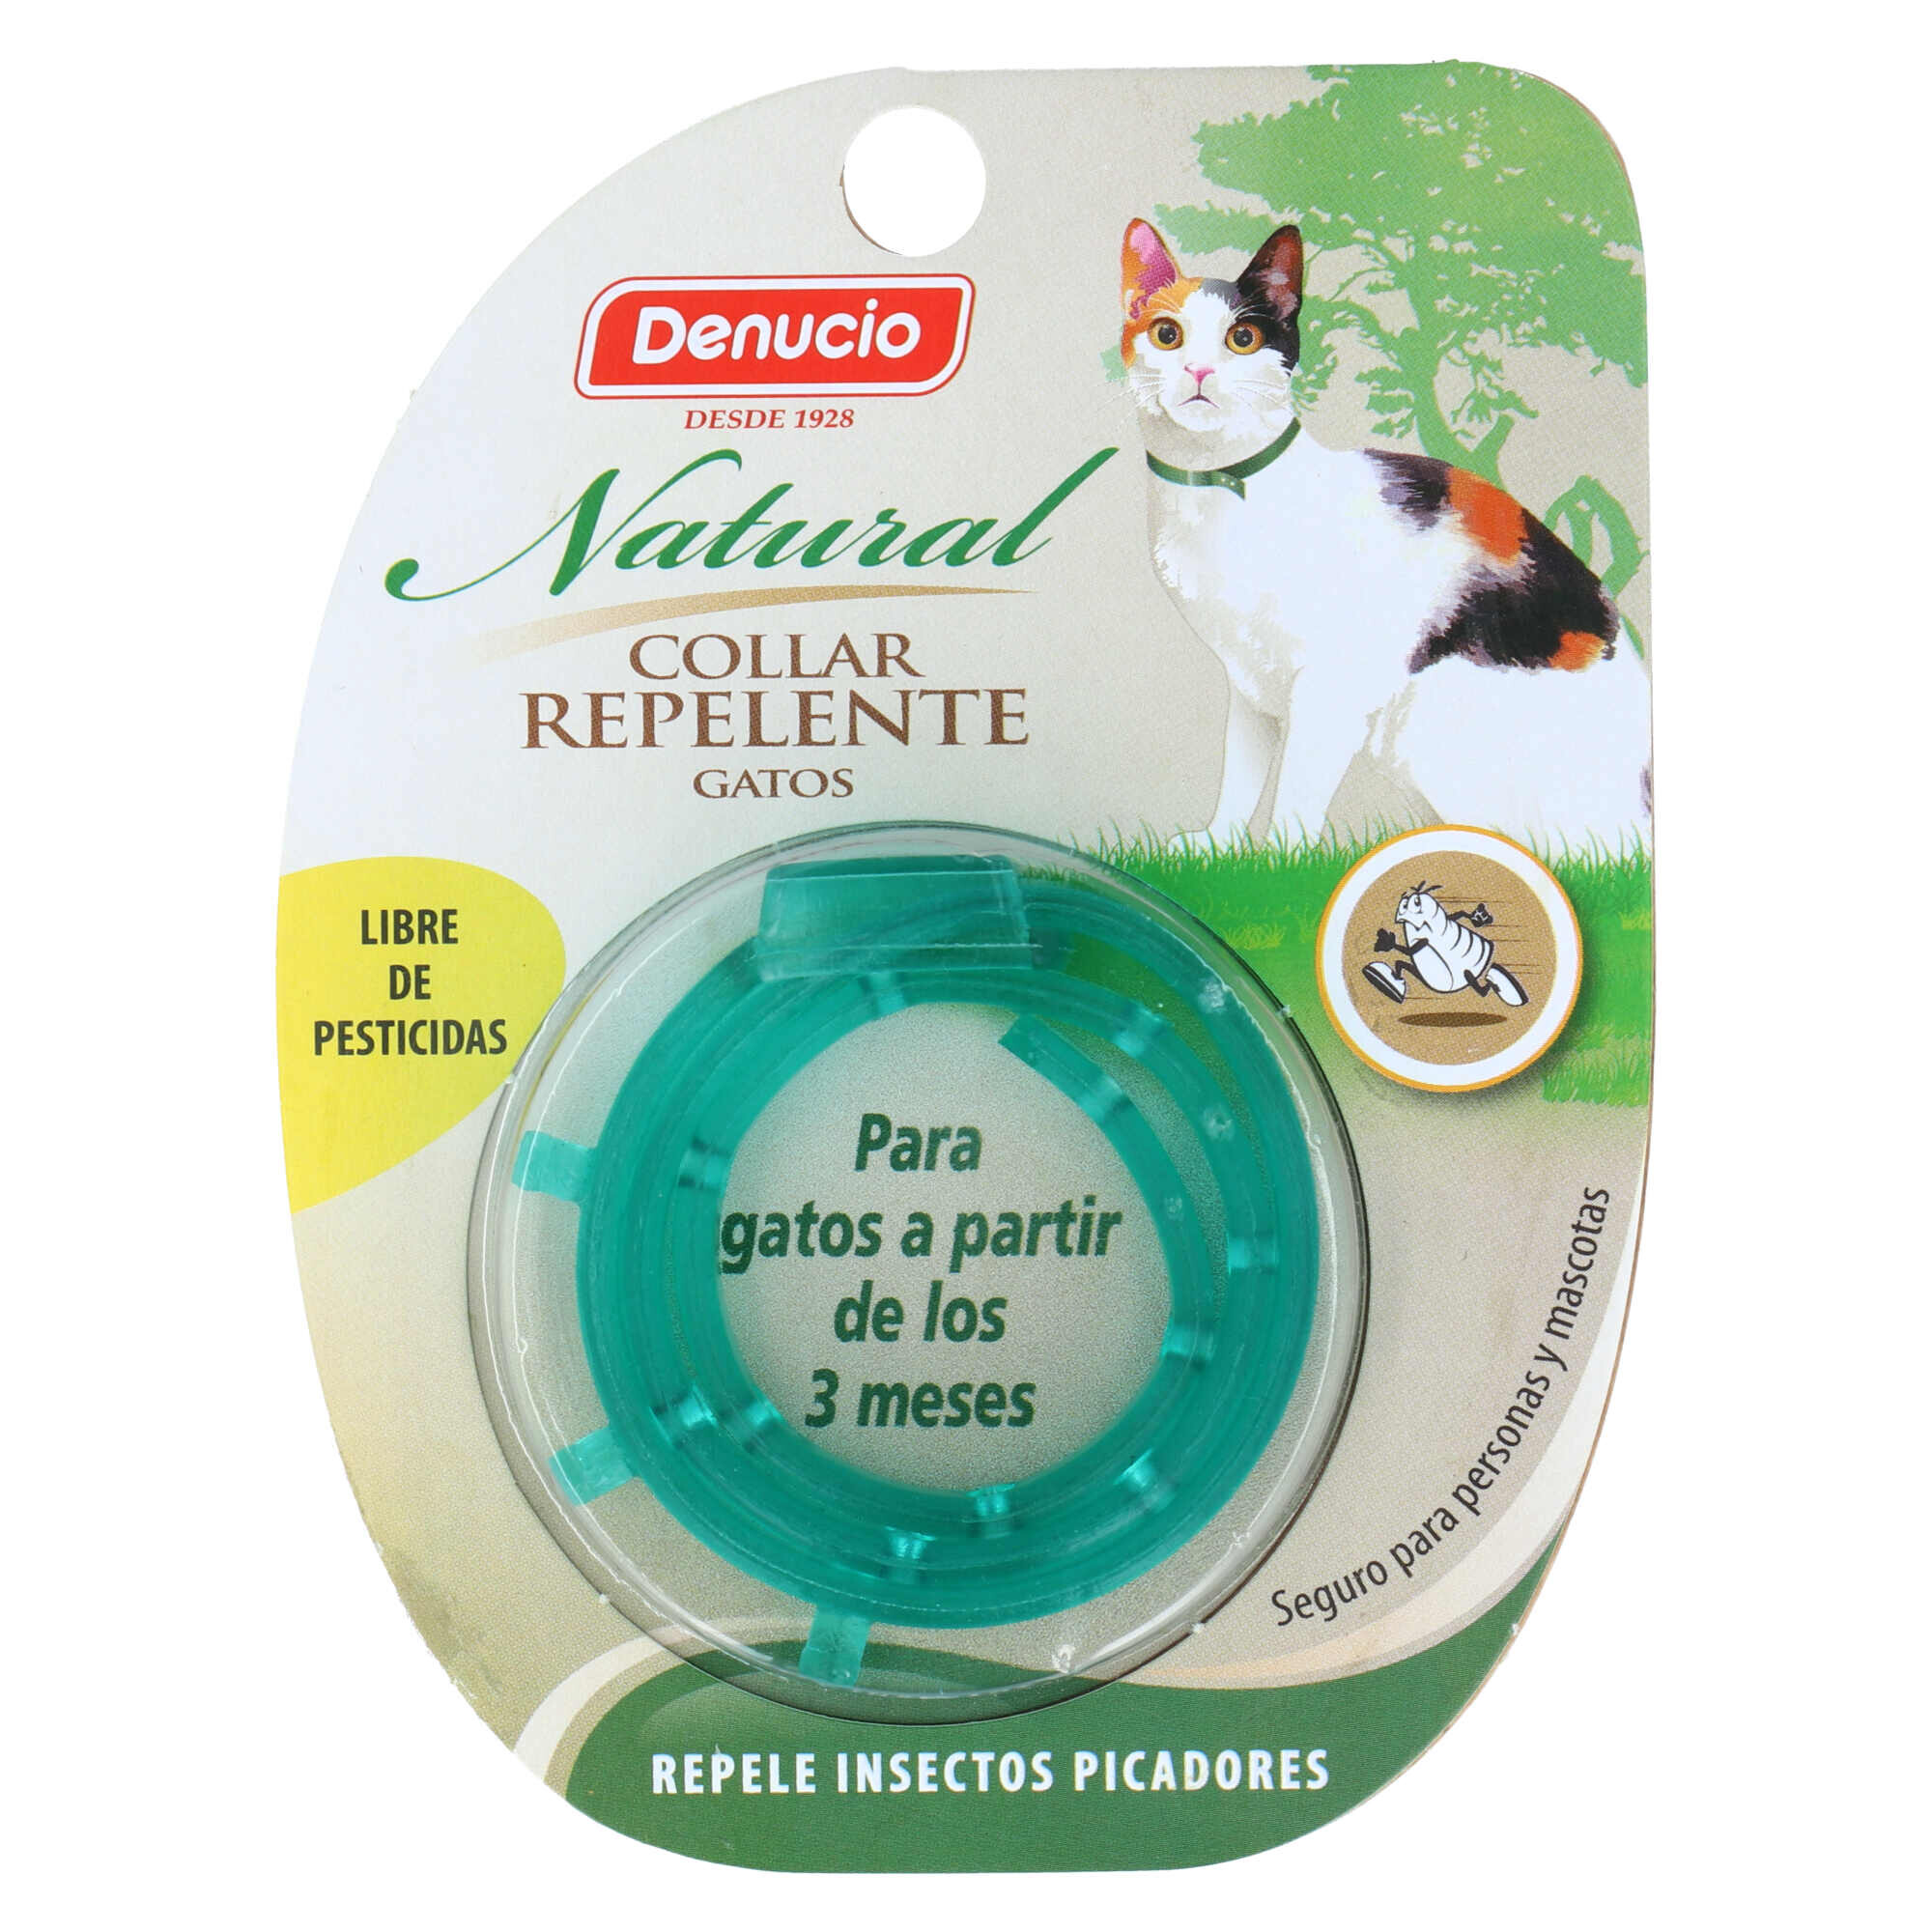 DENUCIO Collar Repelente Natural Gatos — Denucio